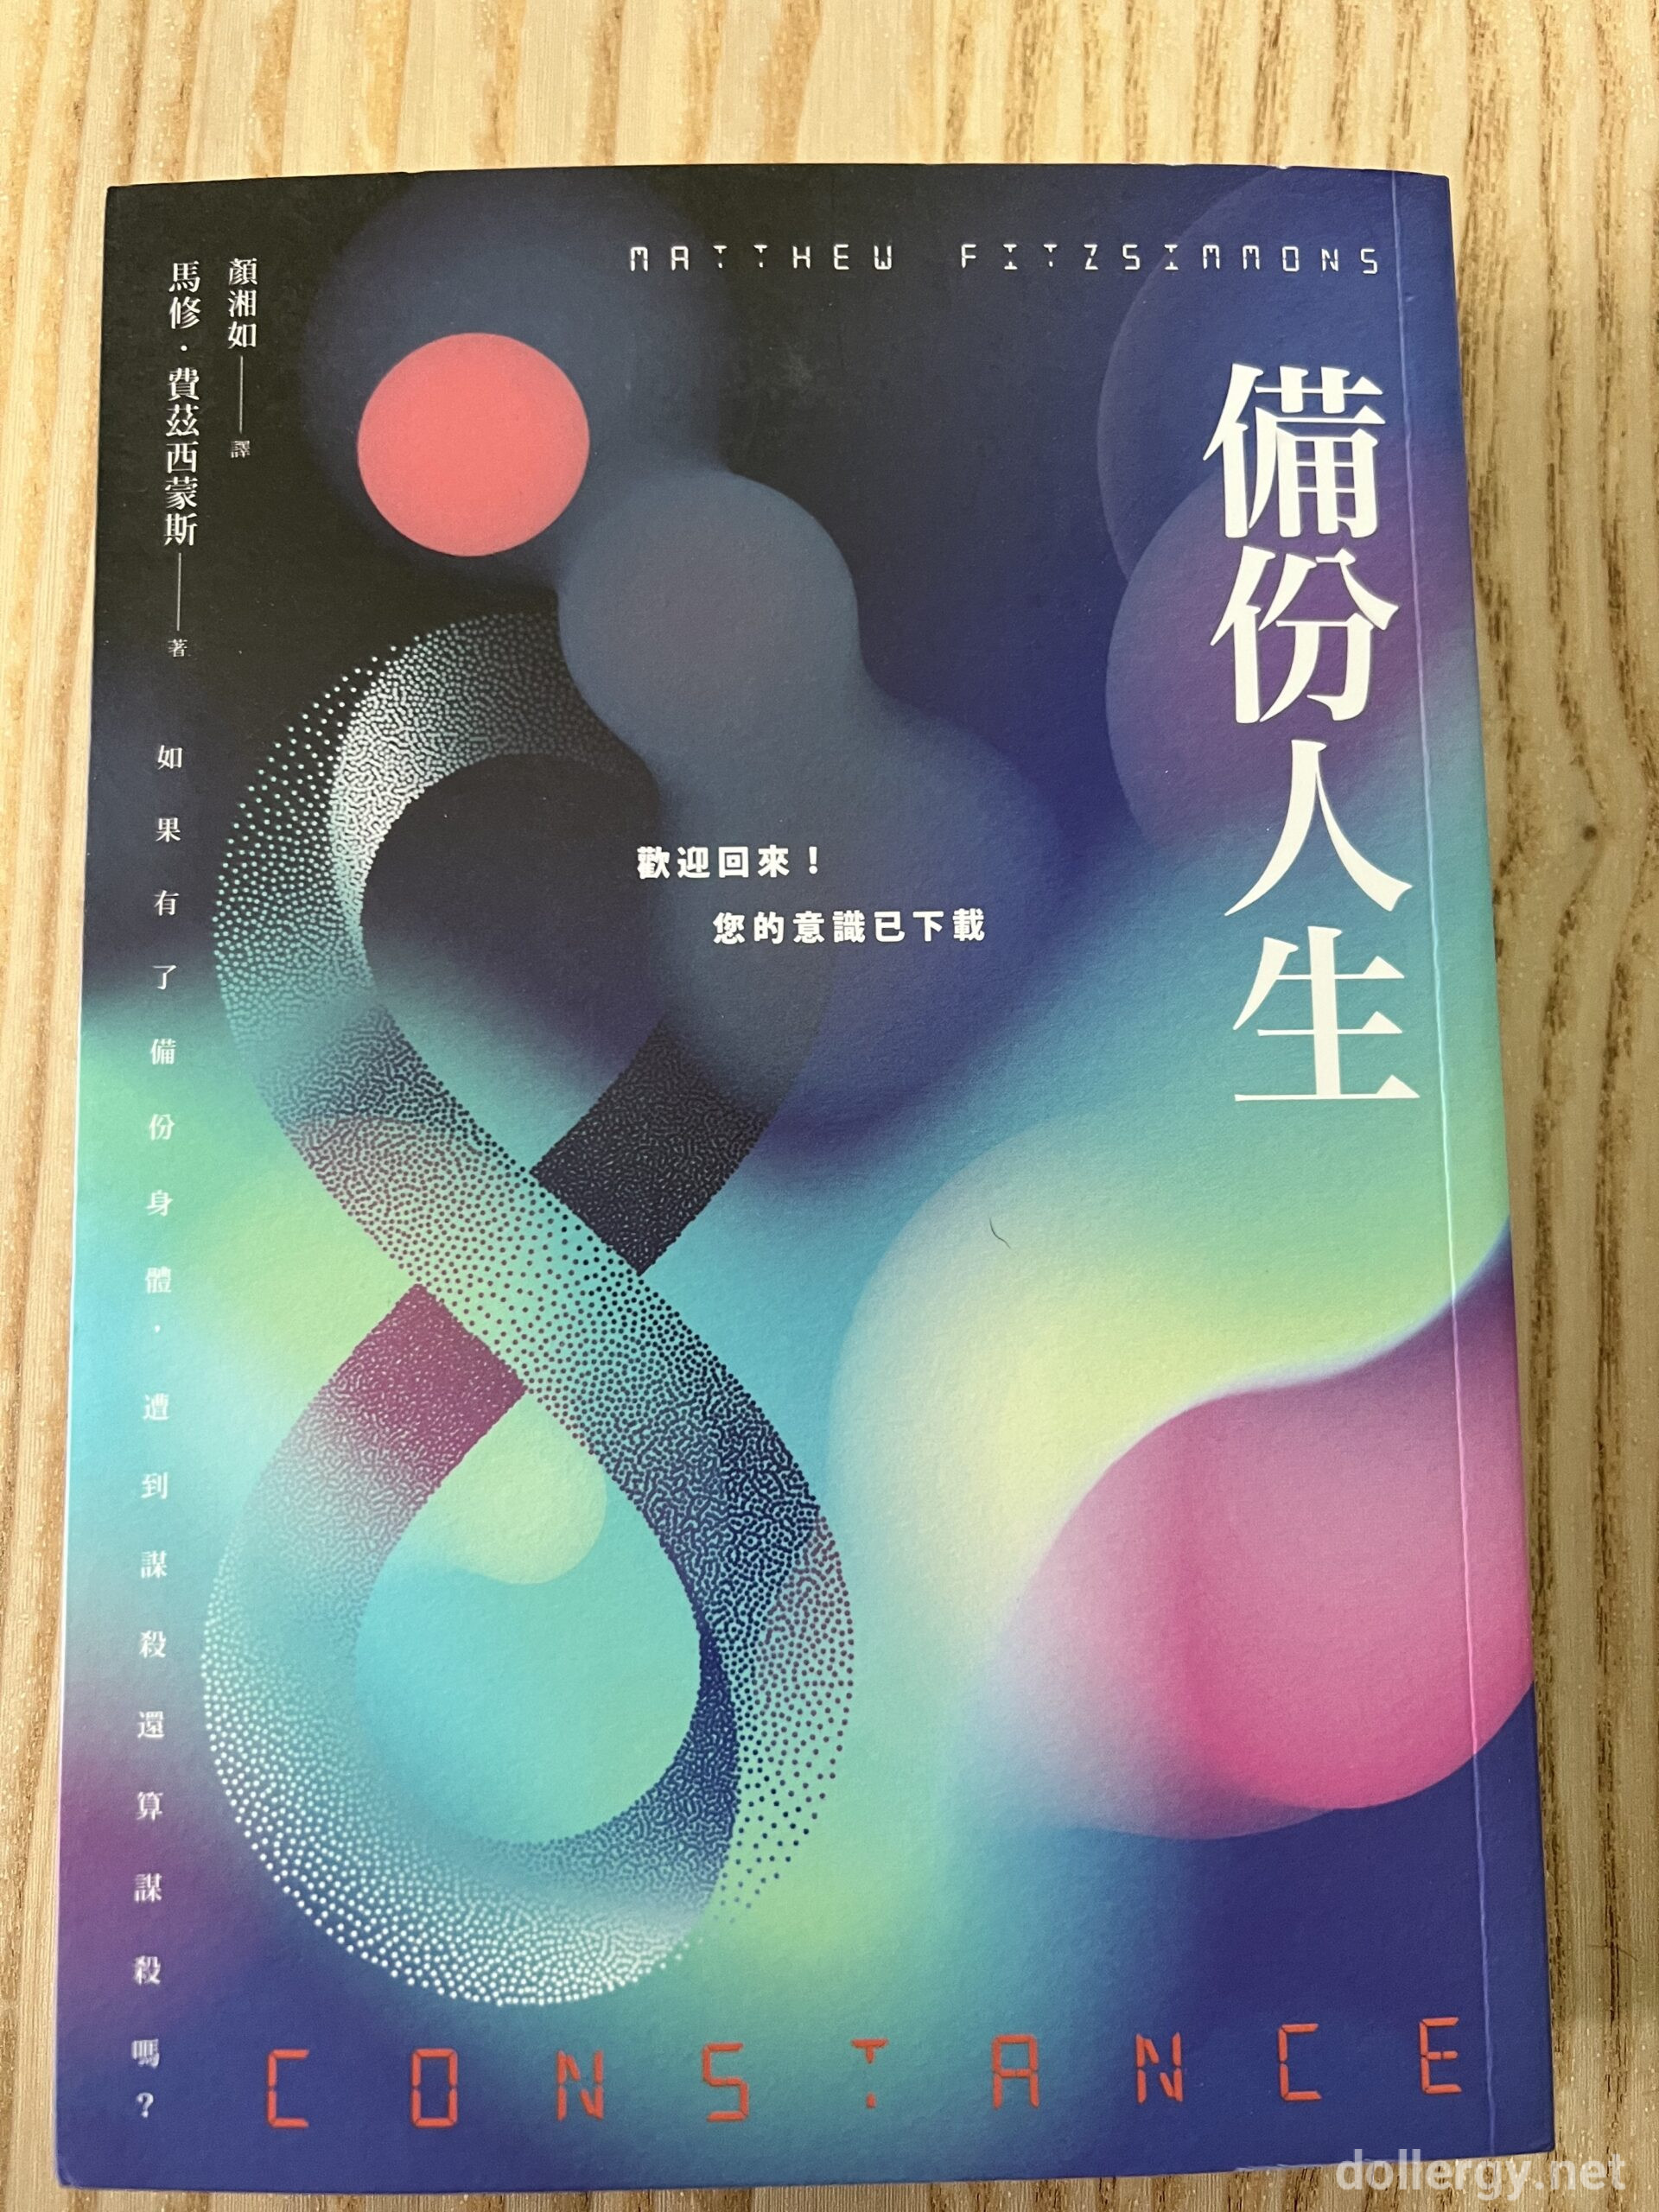 備份人生 Book Cover